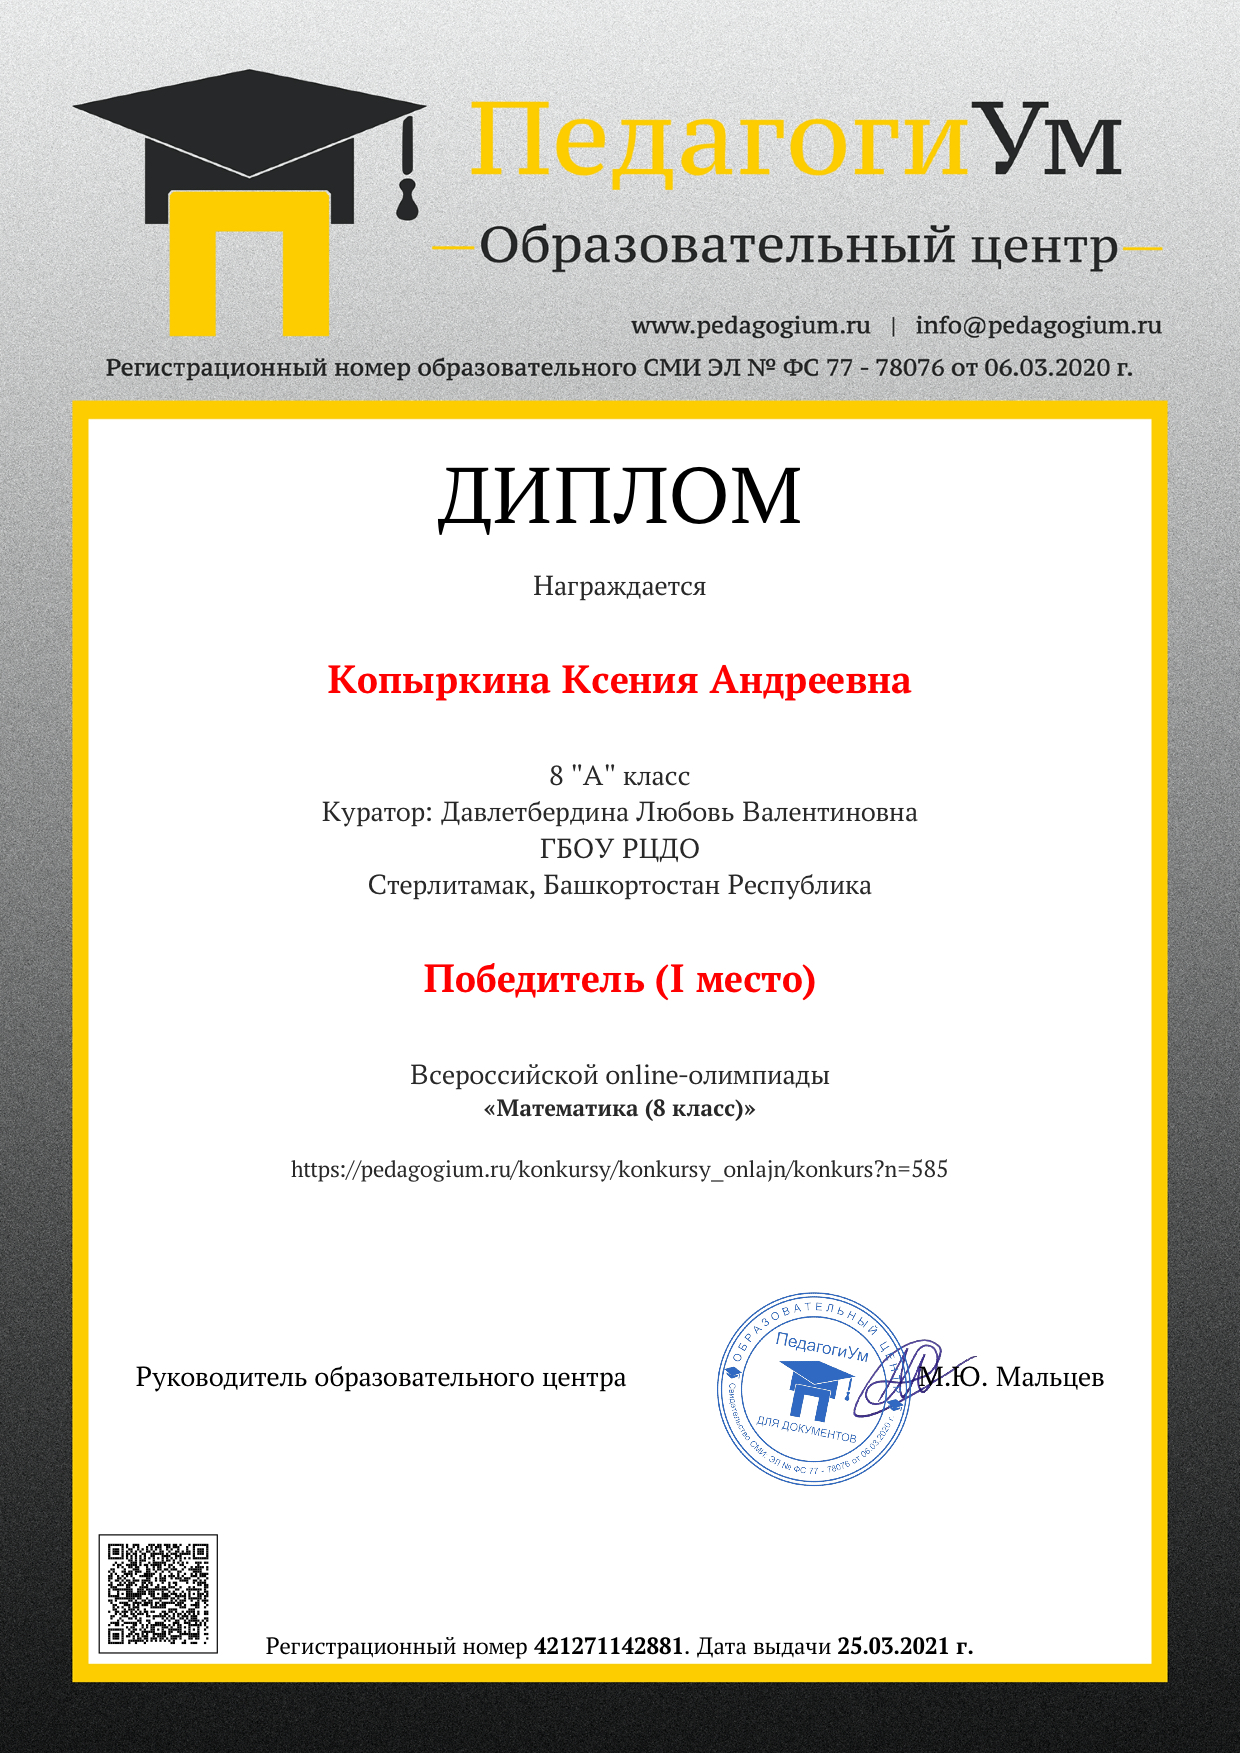 Образец документа воспитаннику-участнику Онлайн-конкурса центра ПедагогиУм.